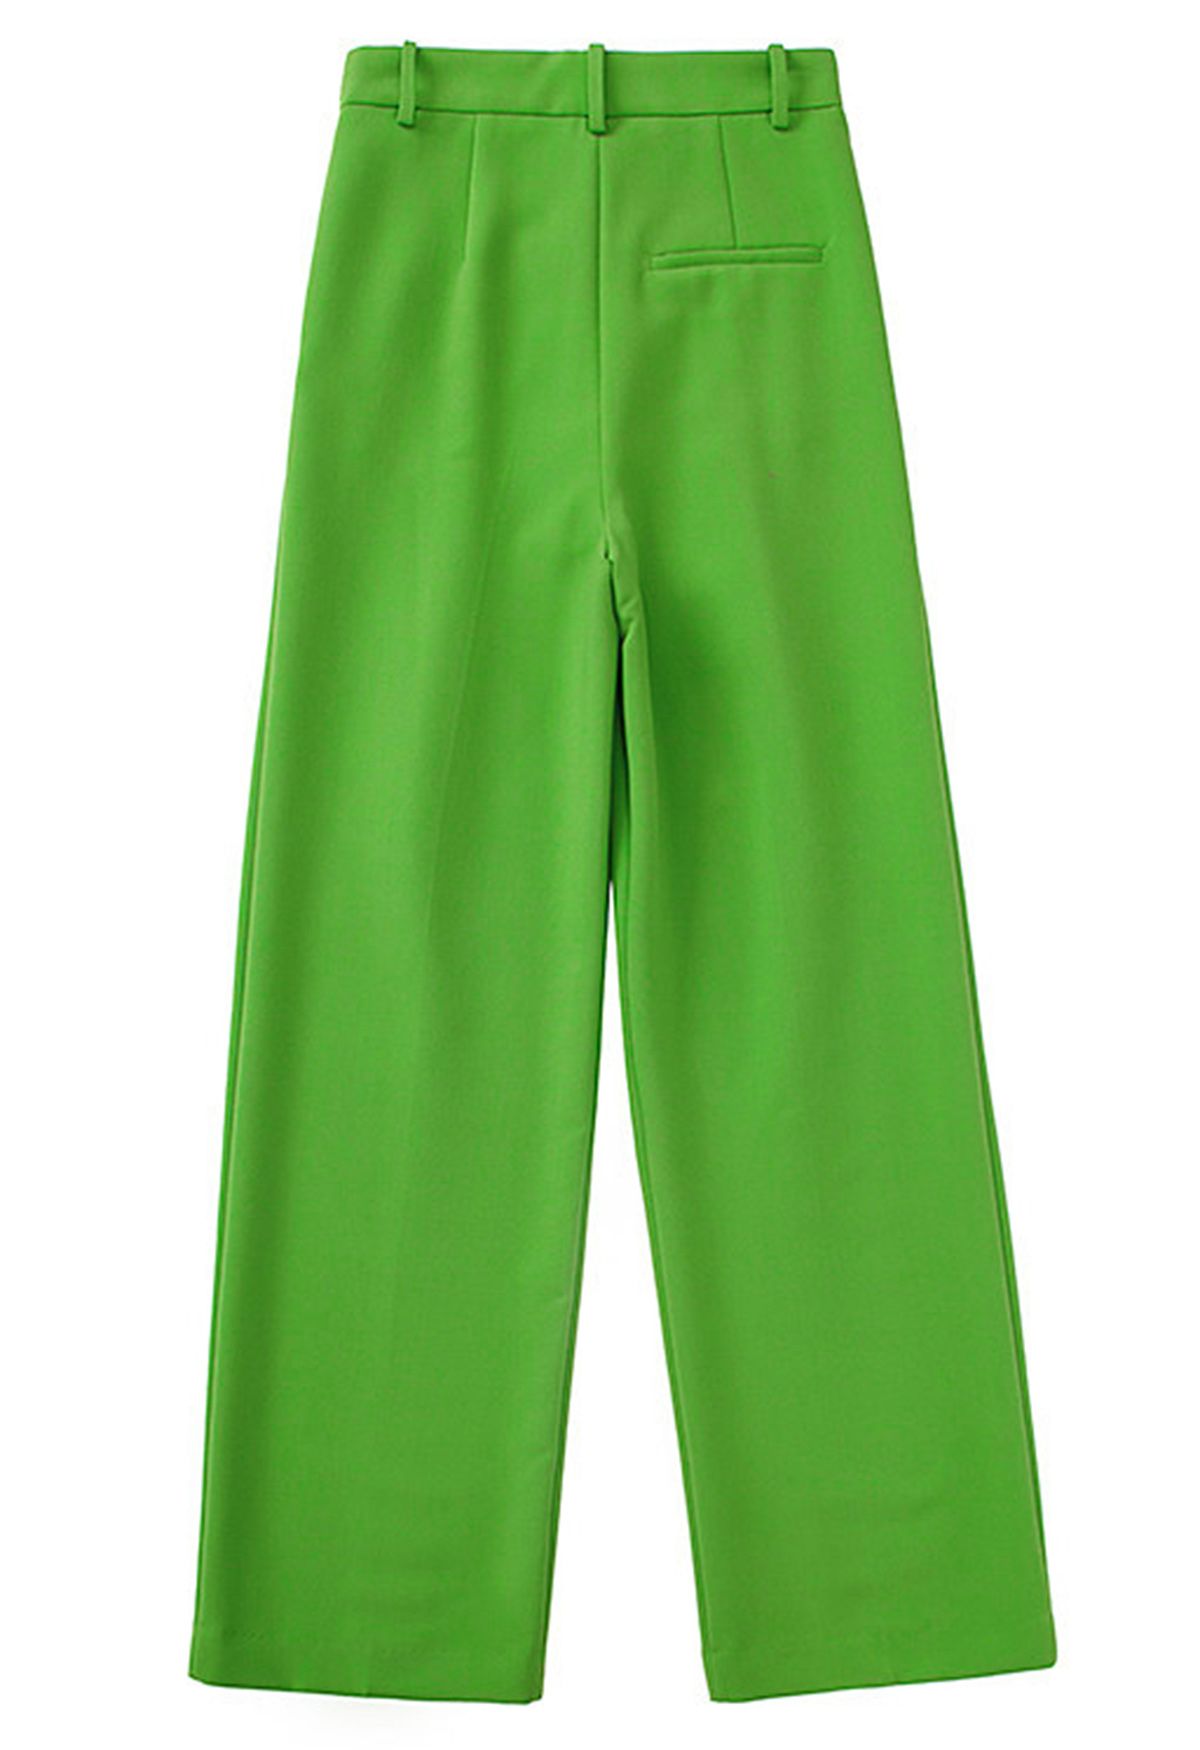 Pantalones rectos con detalle plisado verde hierba